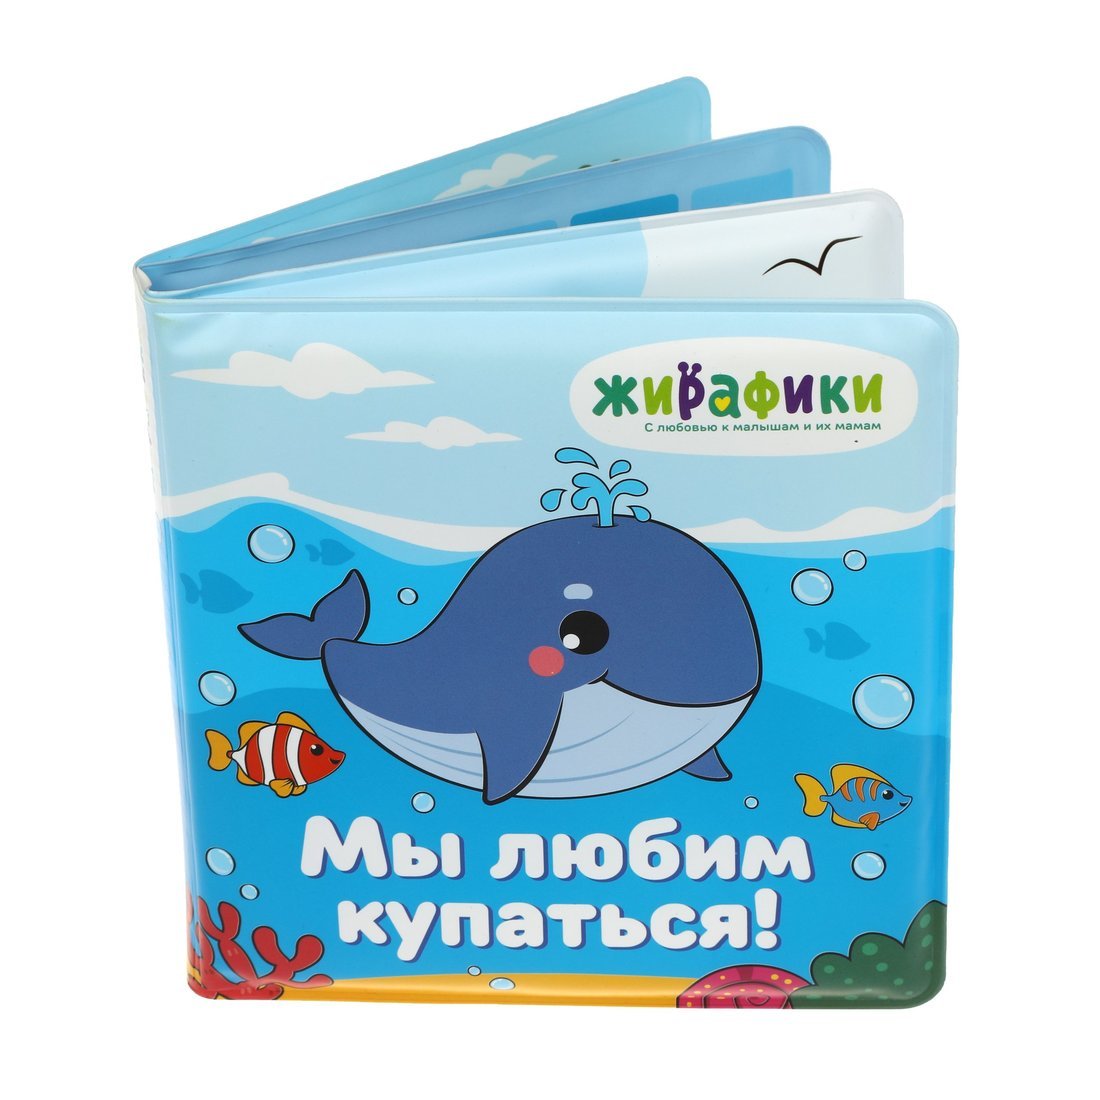 Книжка для купания 939830 Мы любим купаться 14*14см ПВХ со стишками ТМ Жирафики - Томск 